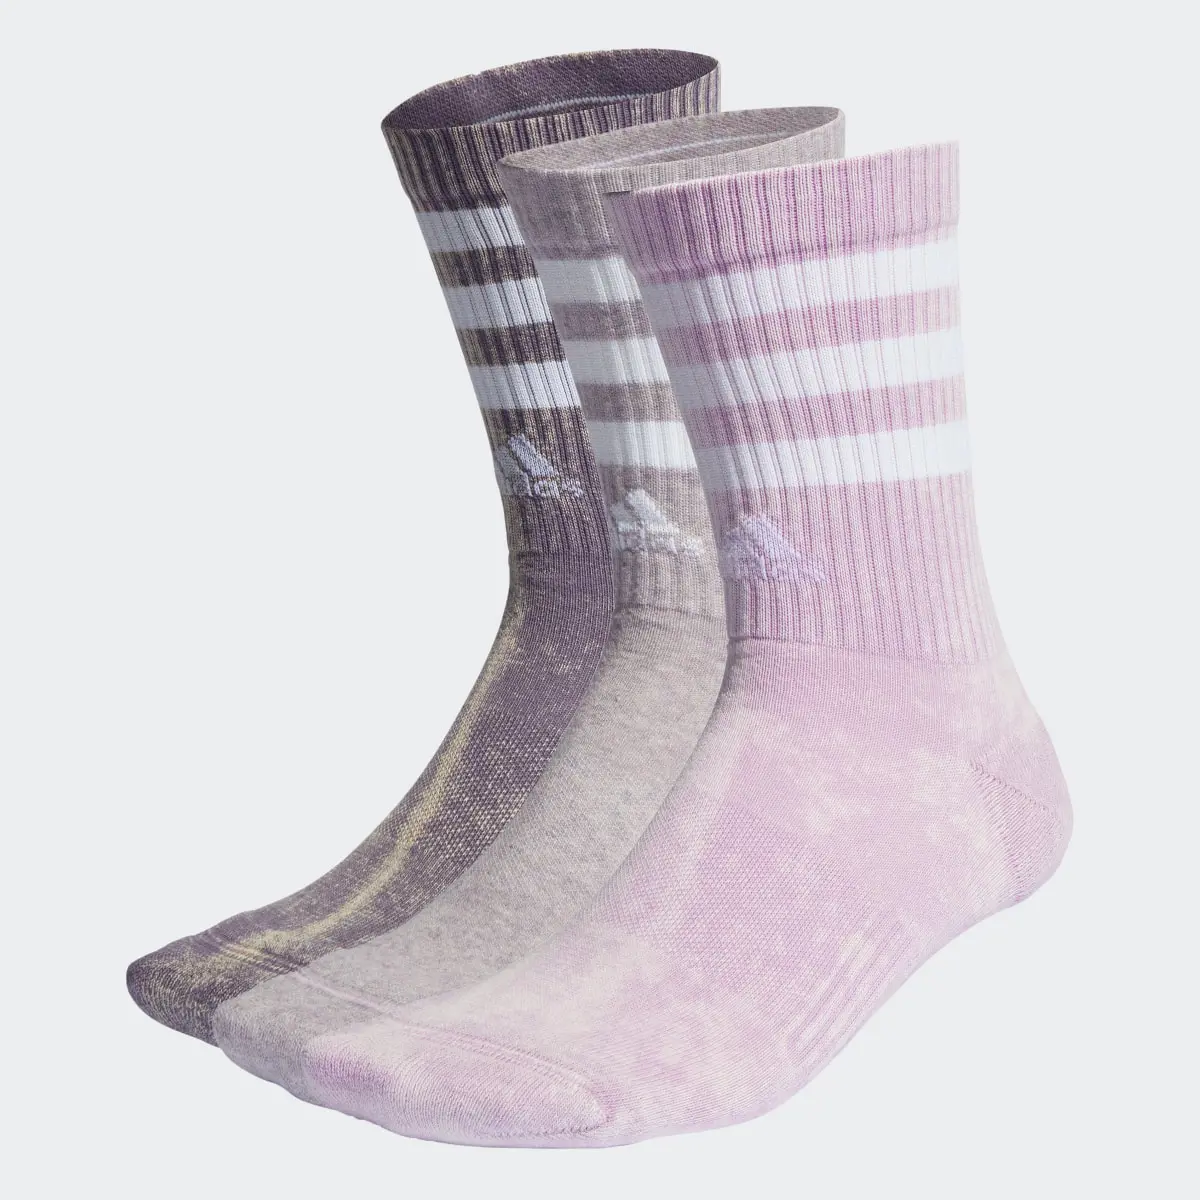 Adidas 3-Streifen Stonewash Crew Socken, 3 Paar. 1